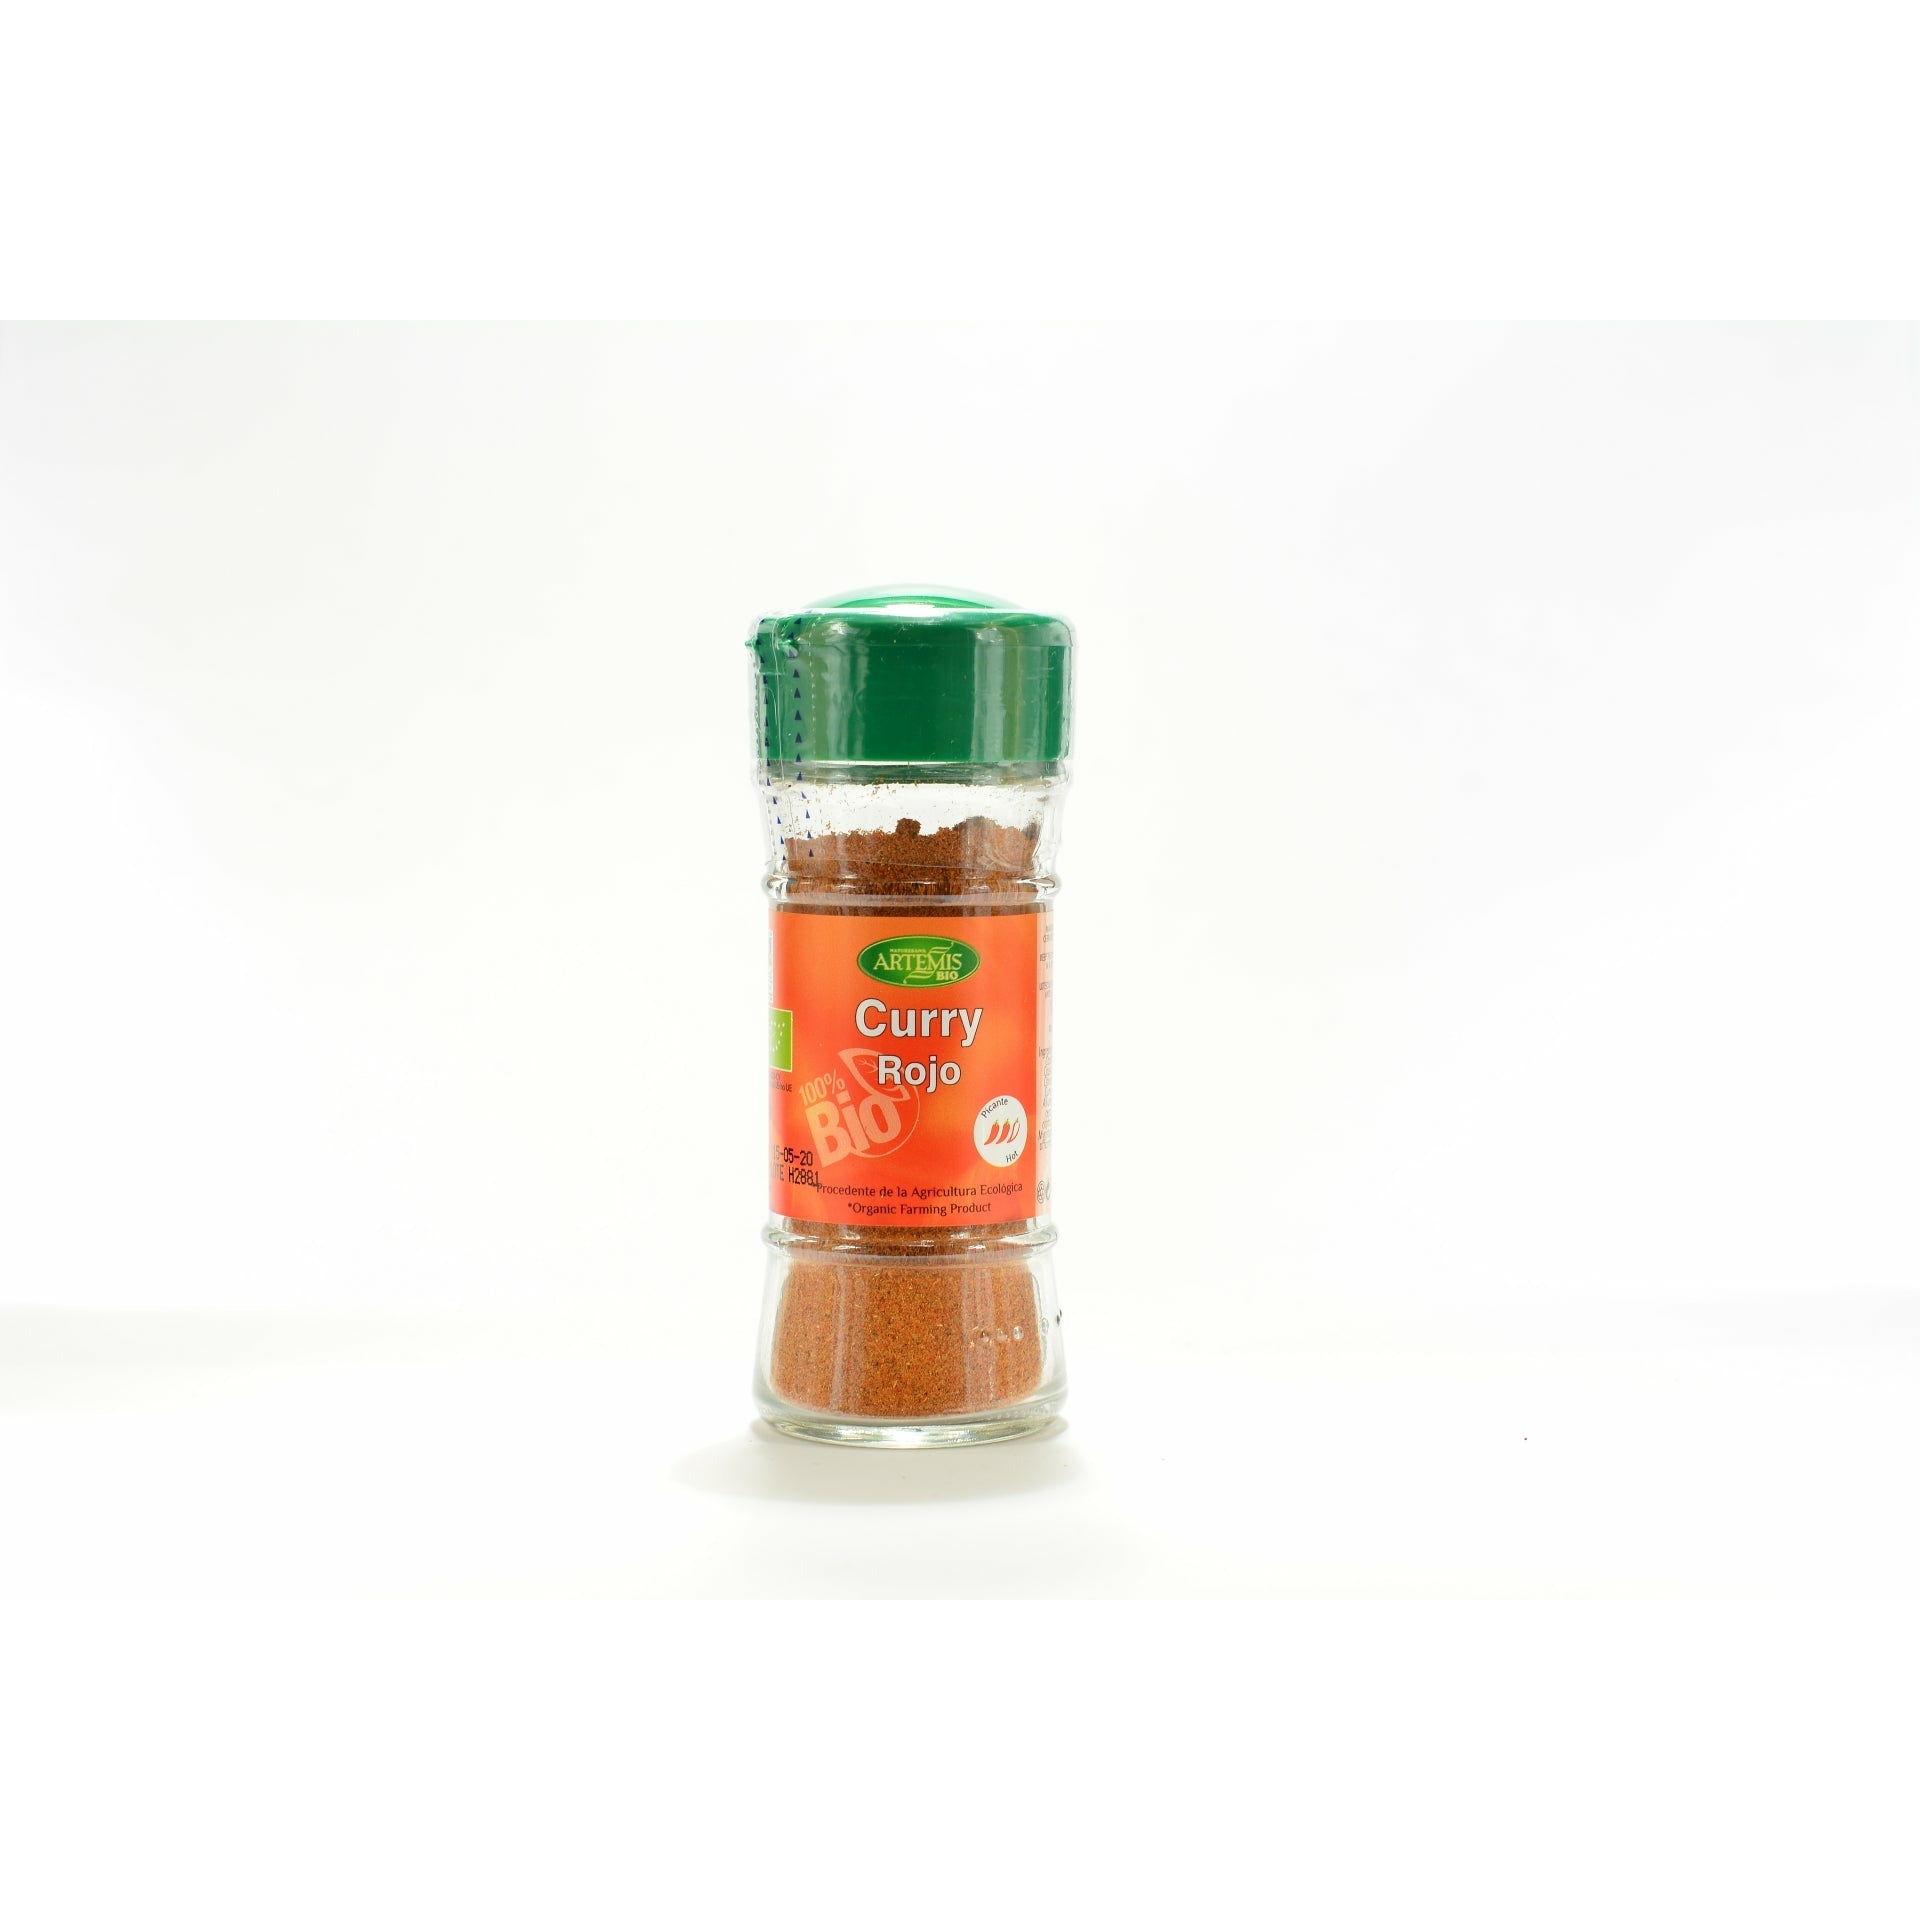 Artemis-Bio-Curry-Rojo-Bote-28-Grs.-Especias-Y-Condimentos-Ecológicos-Artemísbio-Biopharmacia,-Parafarmacia-online